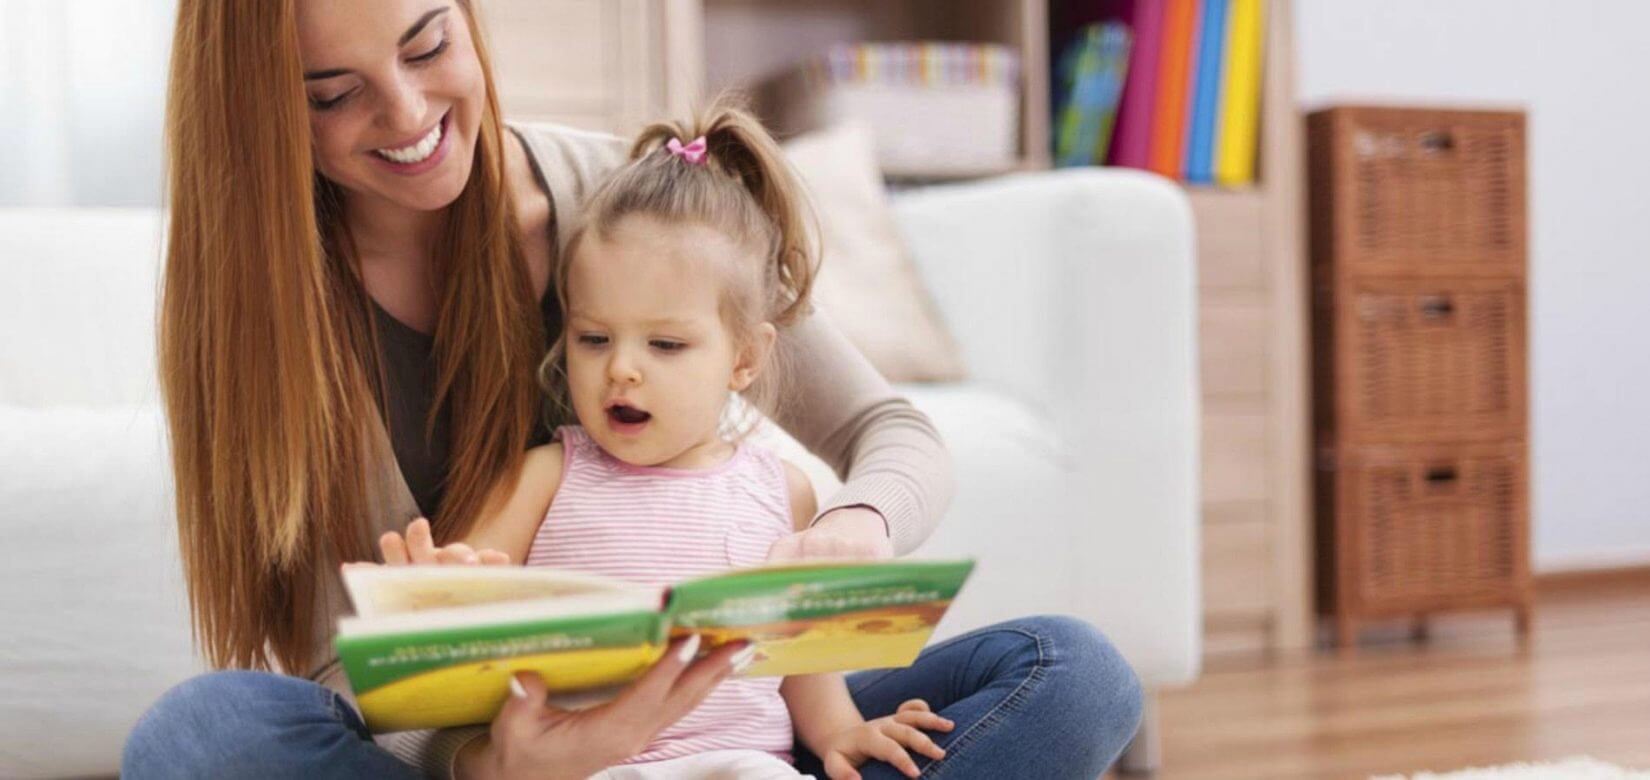 7 διασκεδαστικοί & δημιουργικοί τρόποι για να αγαπήσουν τα παιδιά την ανάγνωση βιβλίων